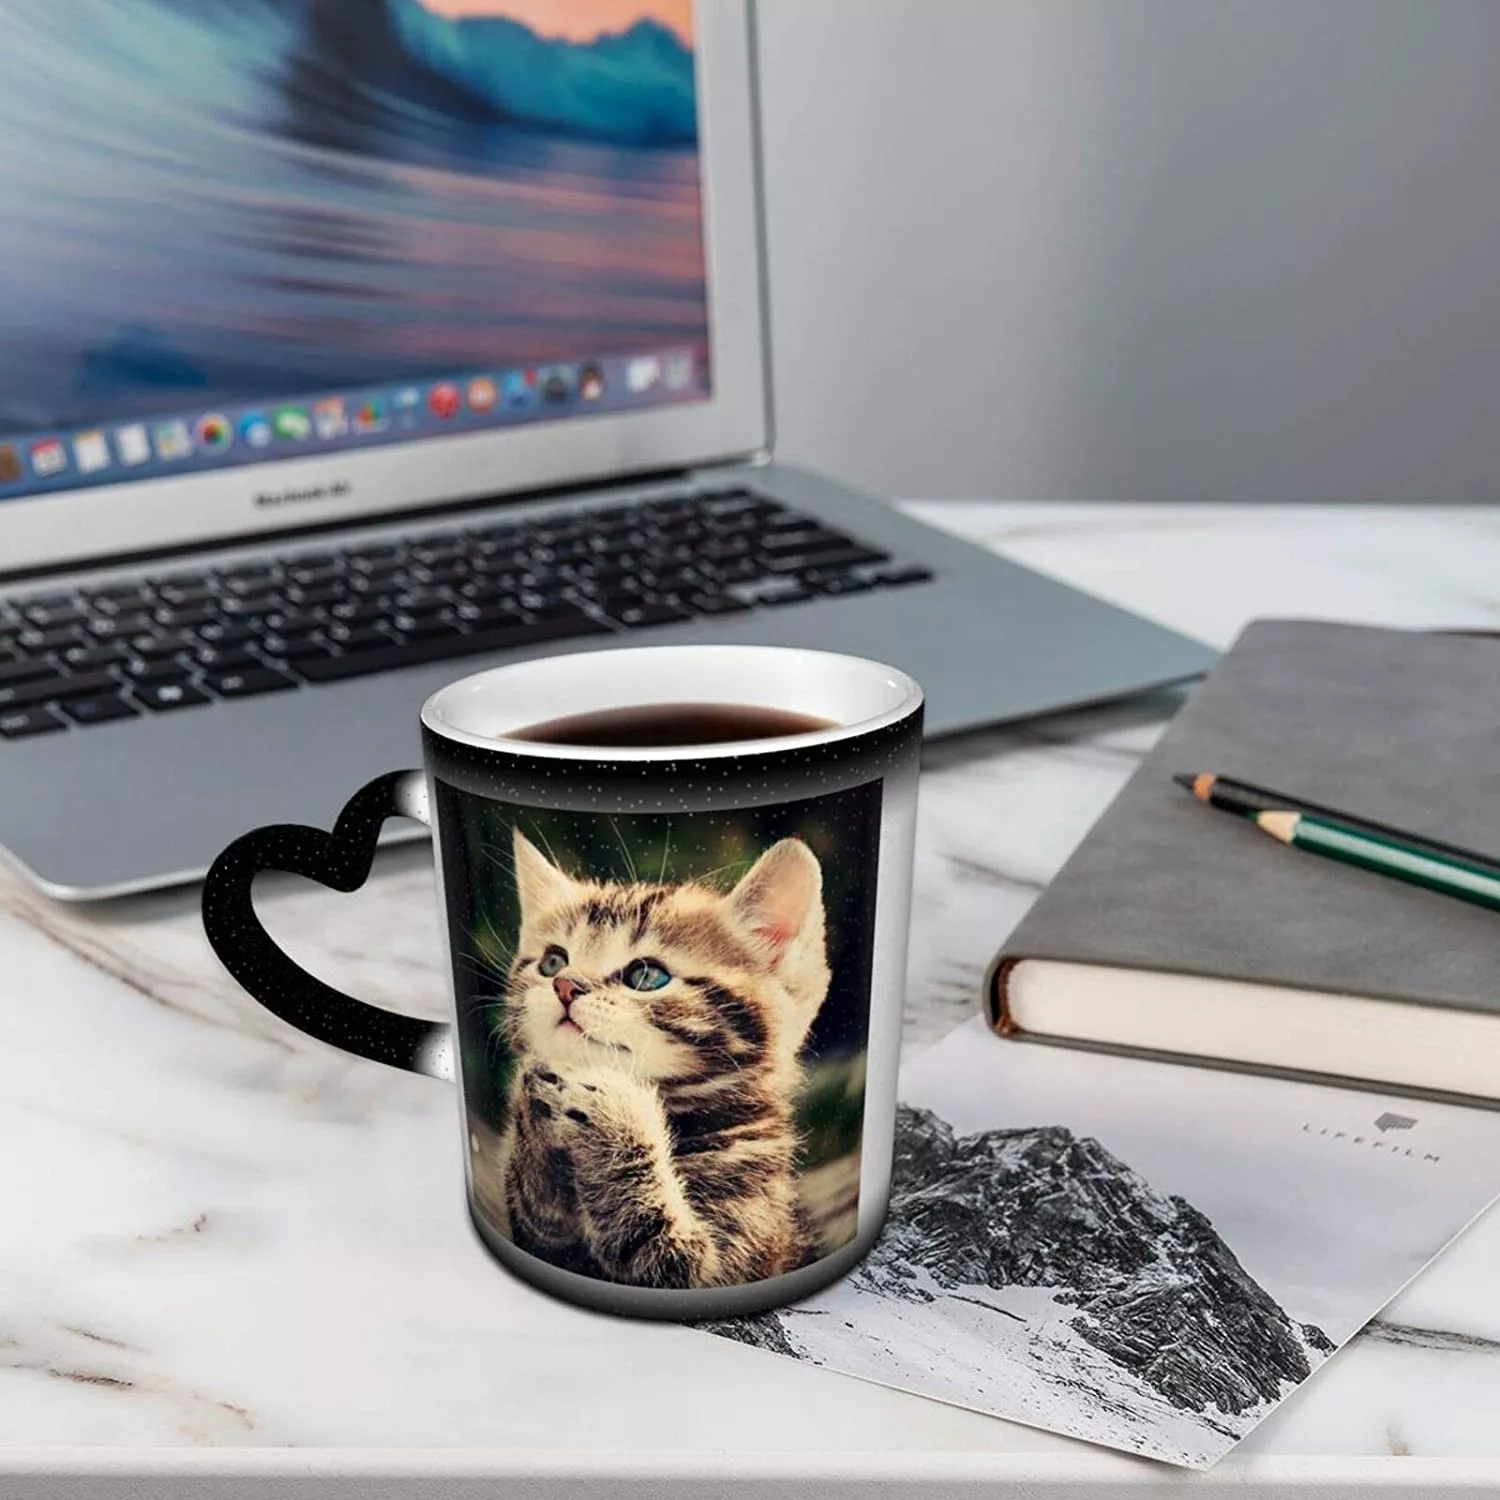 Heat Change Cat Mug on Desk Near Laptop